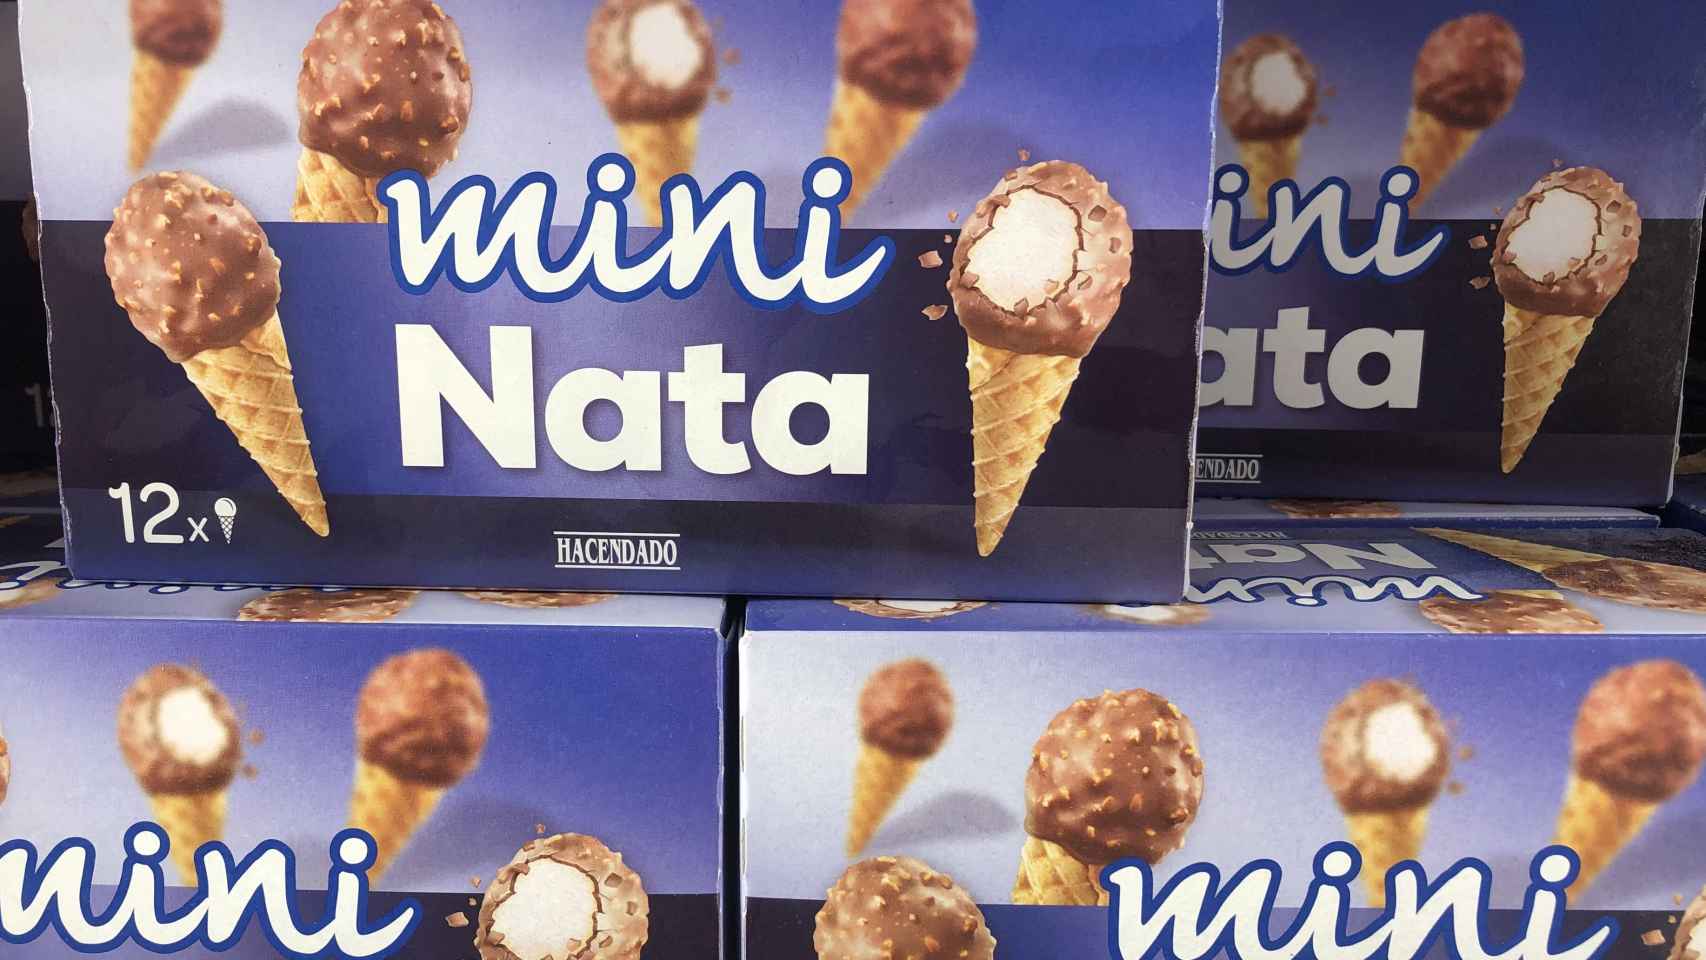 Los famosos 'mini nata', unos de los helados favoritos de Mercadona.